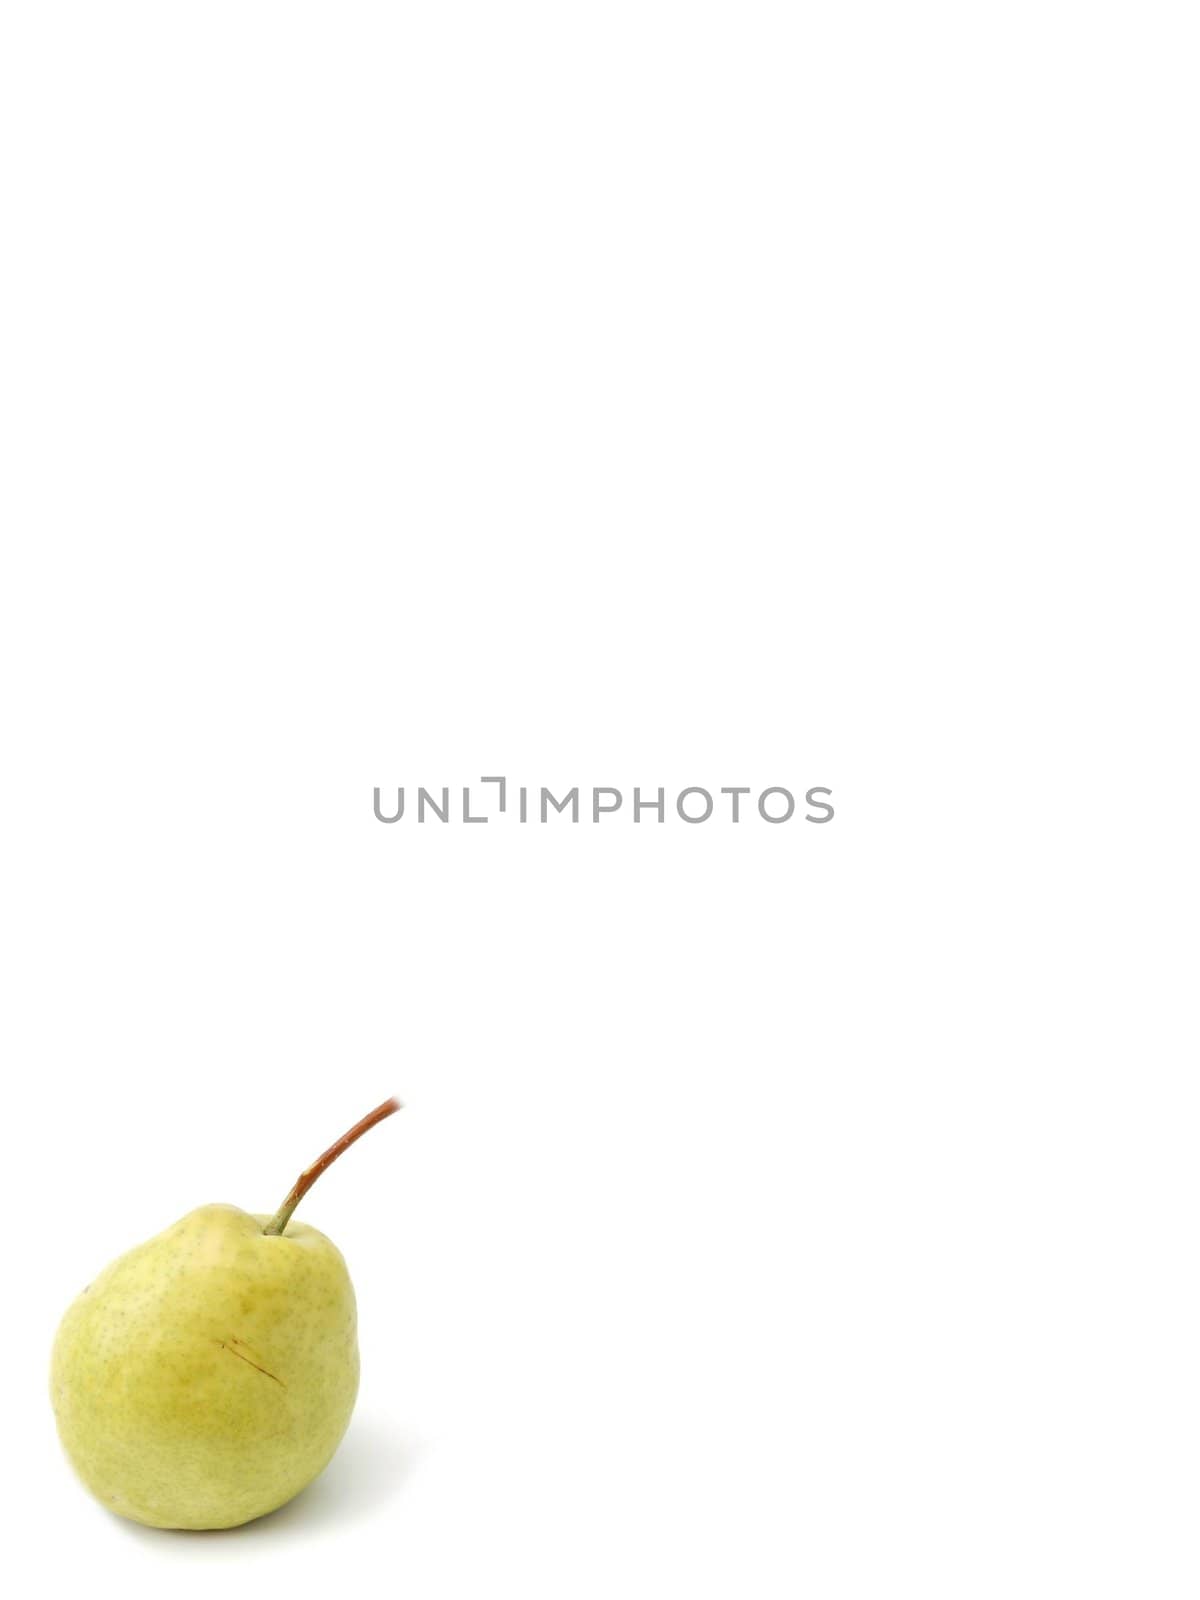 one pear by nehru